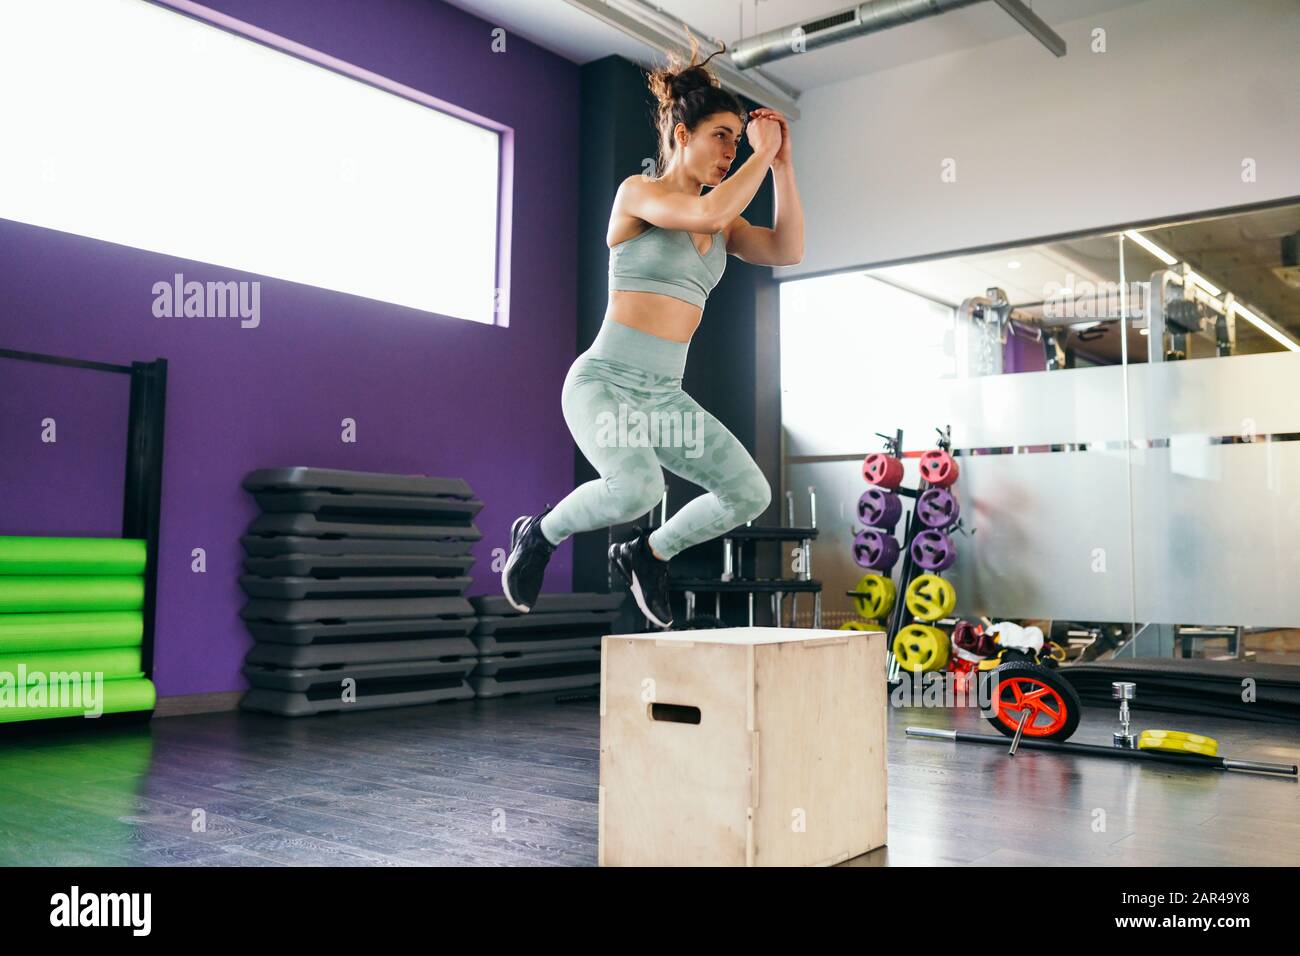 La mujer de la aptitud que salta en una caja como parte de la rutina del ejercicio. Foto de stock